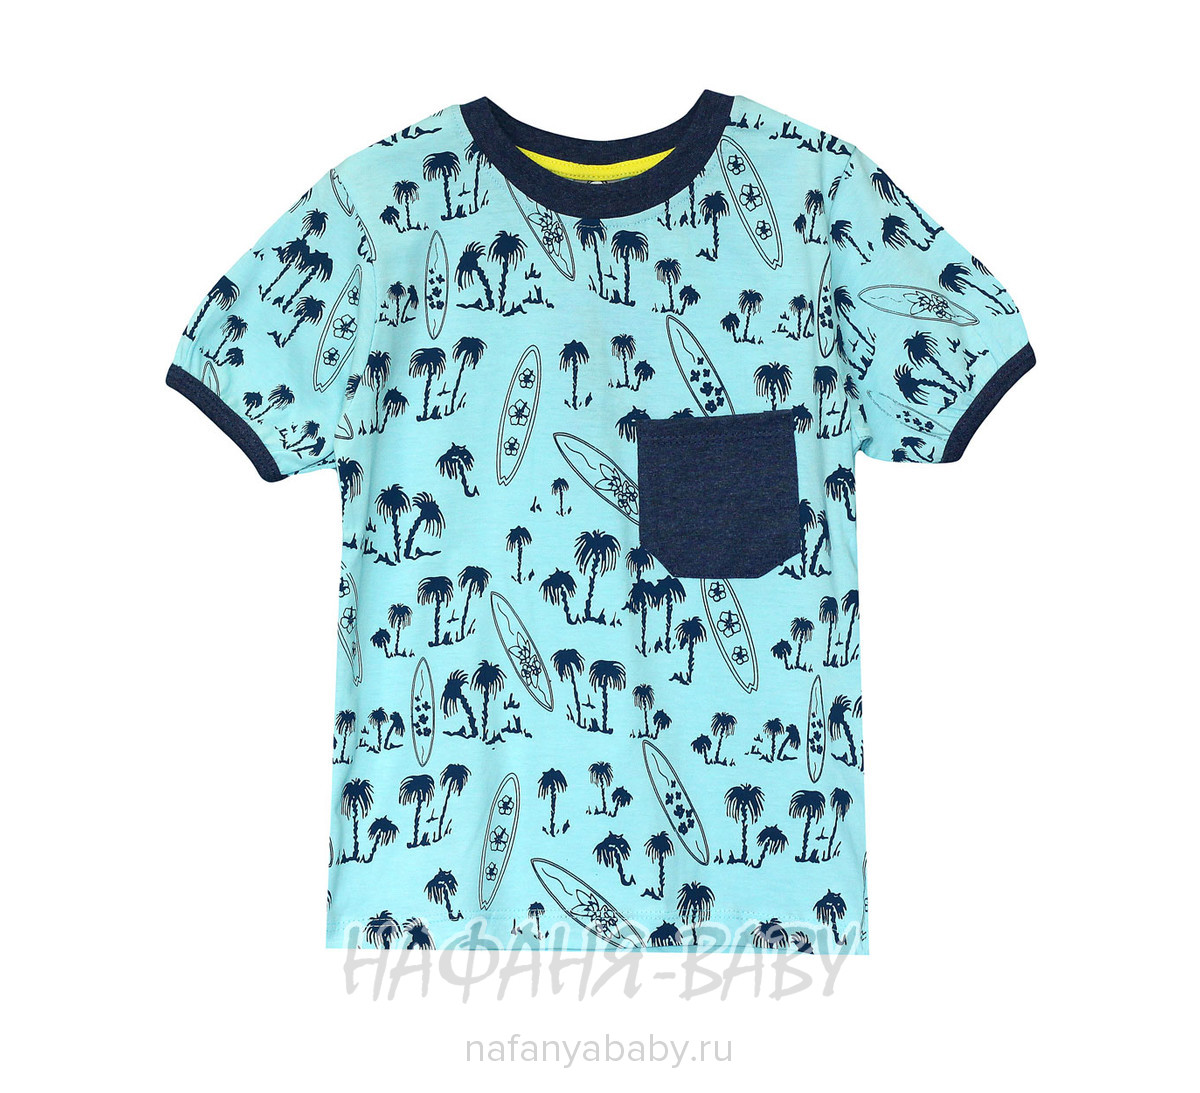 Подростковая футболка MAGO, купить в интернет магазине Нафаня. арт: 3011.